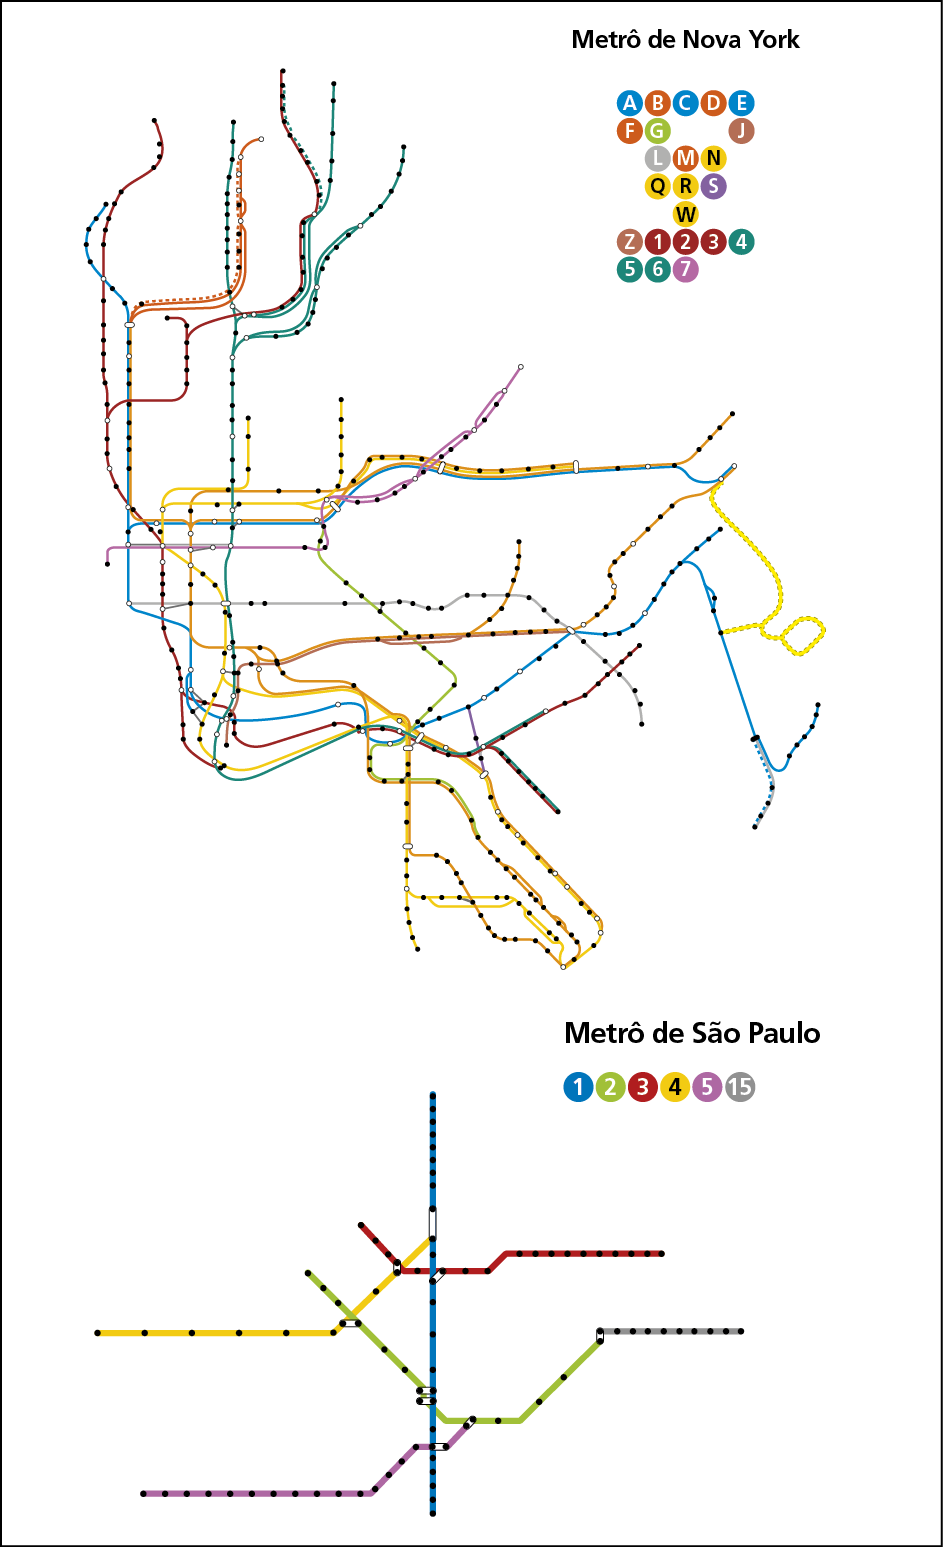 Croquis. Dois croquis representando as linhas do metrô de Nova York e de São Paulo.
Na parte superior, croqui do metrô de Nova York composto por muitas linhas finas e coloridas com pontos pretos e pontos brancos. As linhas são longas, possuem diversas cores e se conectam em vários pontos. Ao lado, a legenda: A azul, B laranja, C azul, D laranja, E azul, F laranja, G verde, J marrom, L cinza, M vermelha, N amarela, Q amarela, R amarela, S roxa, W amarela, Z marrom; 1, vinho, 2 vinho, 3 vinho, 4 verde, 5 verde, 6 verde, 7 rosa. 
Na parte inferior, croqui do metrô de São Paulo composto por 6 linhas finas com pontos pretos; as linhas têm cores diferente e se conectam em alguns pontos. 
Ao lado a legenda:
1 azul, 2 verde, 3 vermelha, 4 amarela, 5 rosa, 15 cinza.